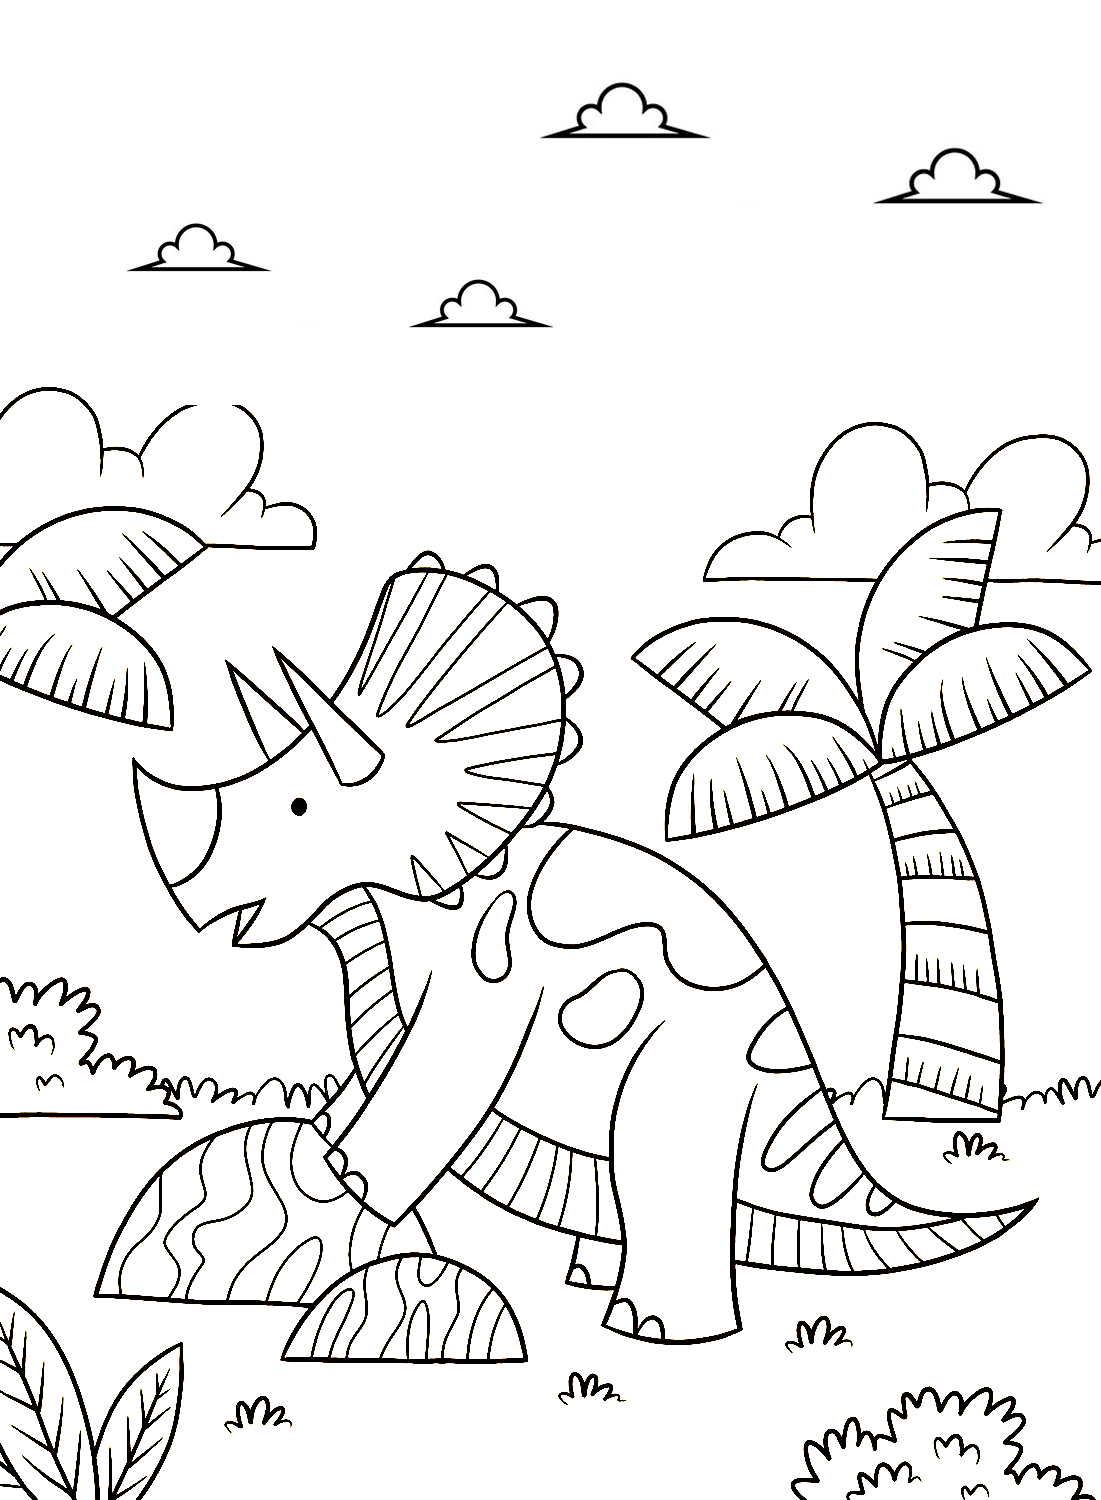 Páginas para colorir de Triceratops para imprimir de Triceratops